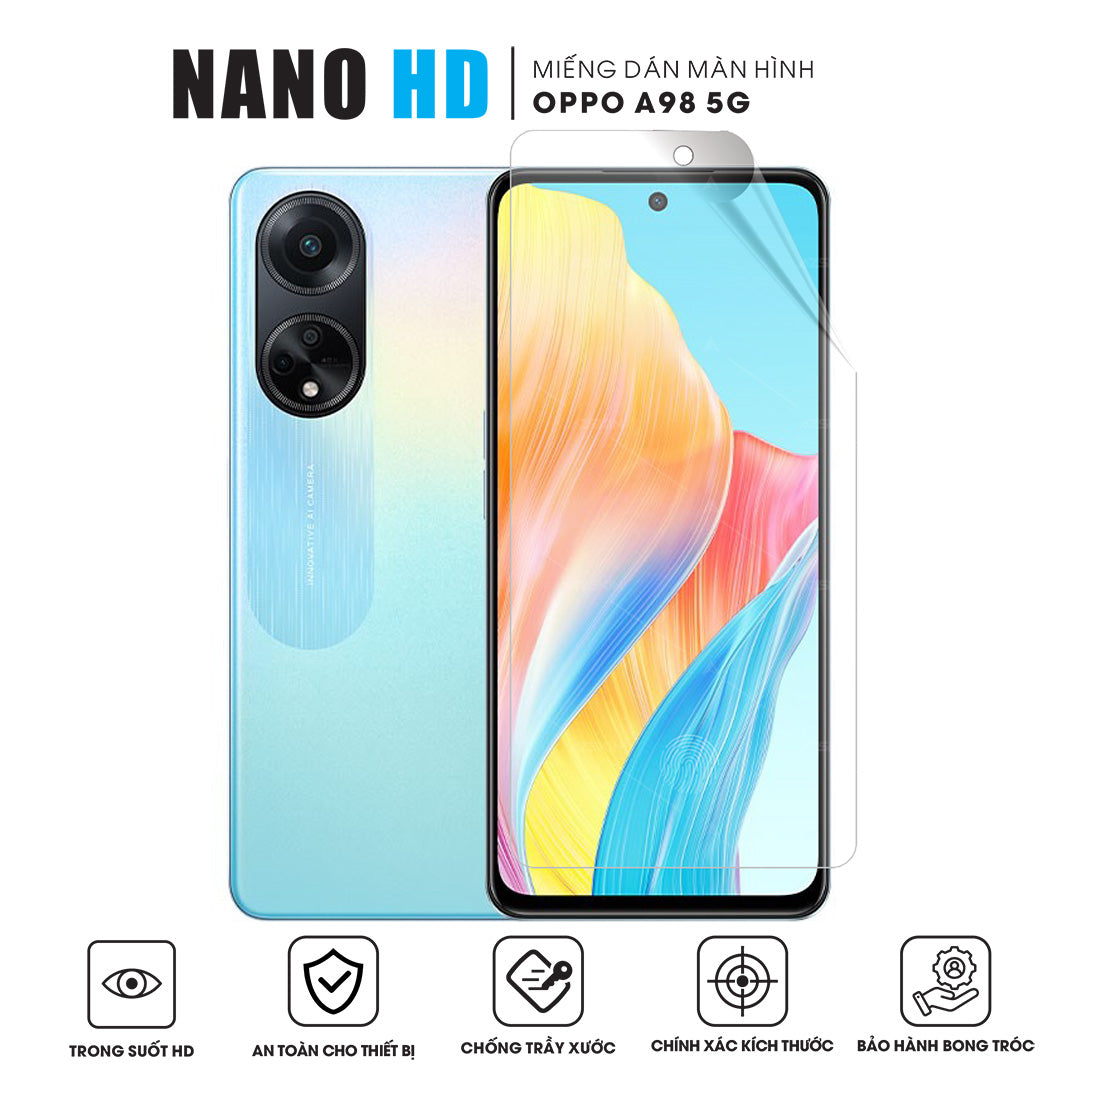 Miếng dán màn hình NANO HD OPPO A98 5G